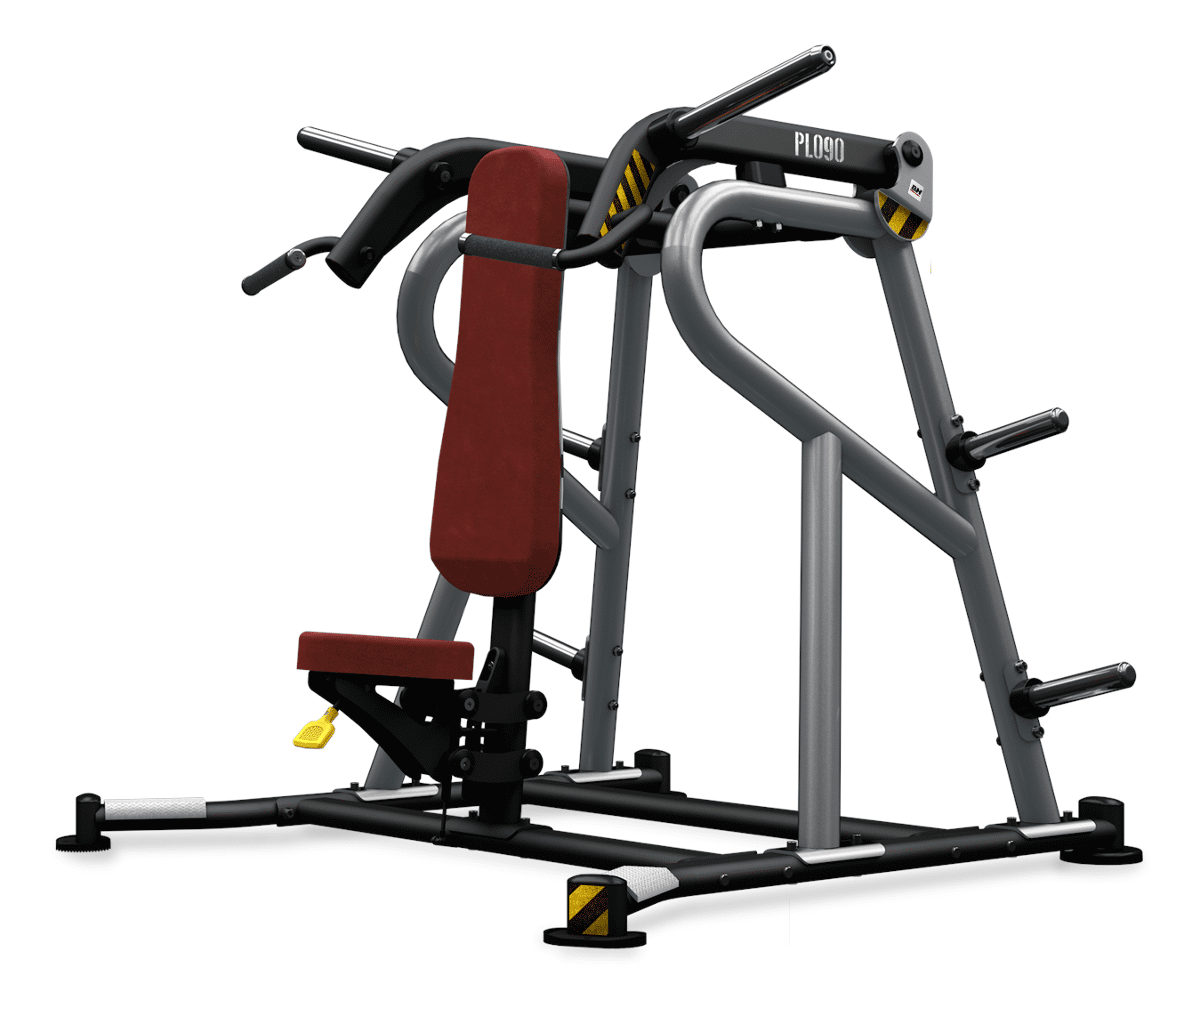 Maszyna półwolna do ćwiczeń mięśni ramion Shoulder Press Convergent PL090 BH Fitness (Zdjęcie 1)